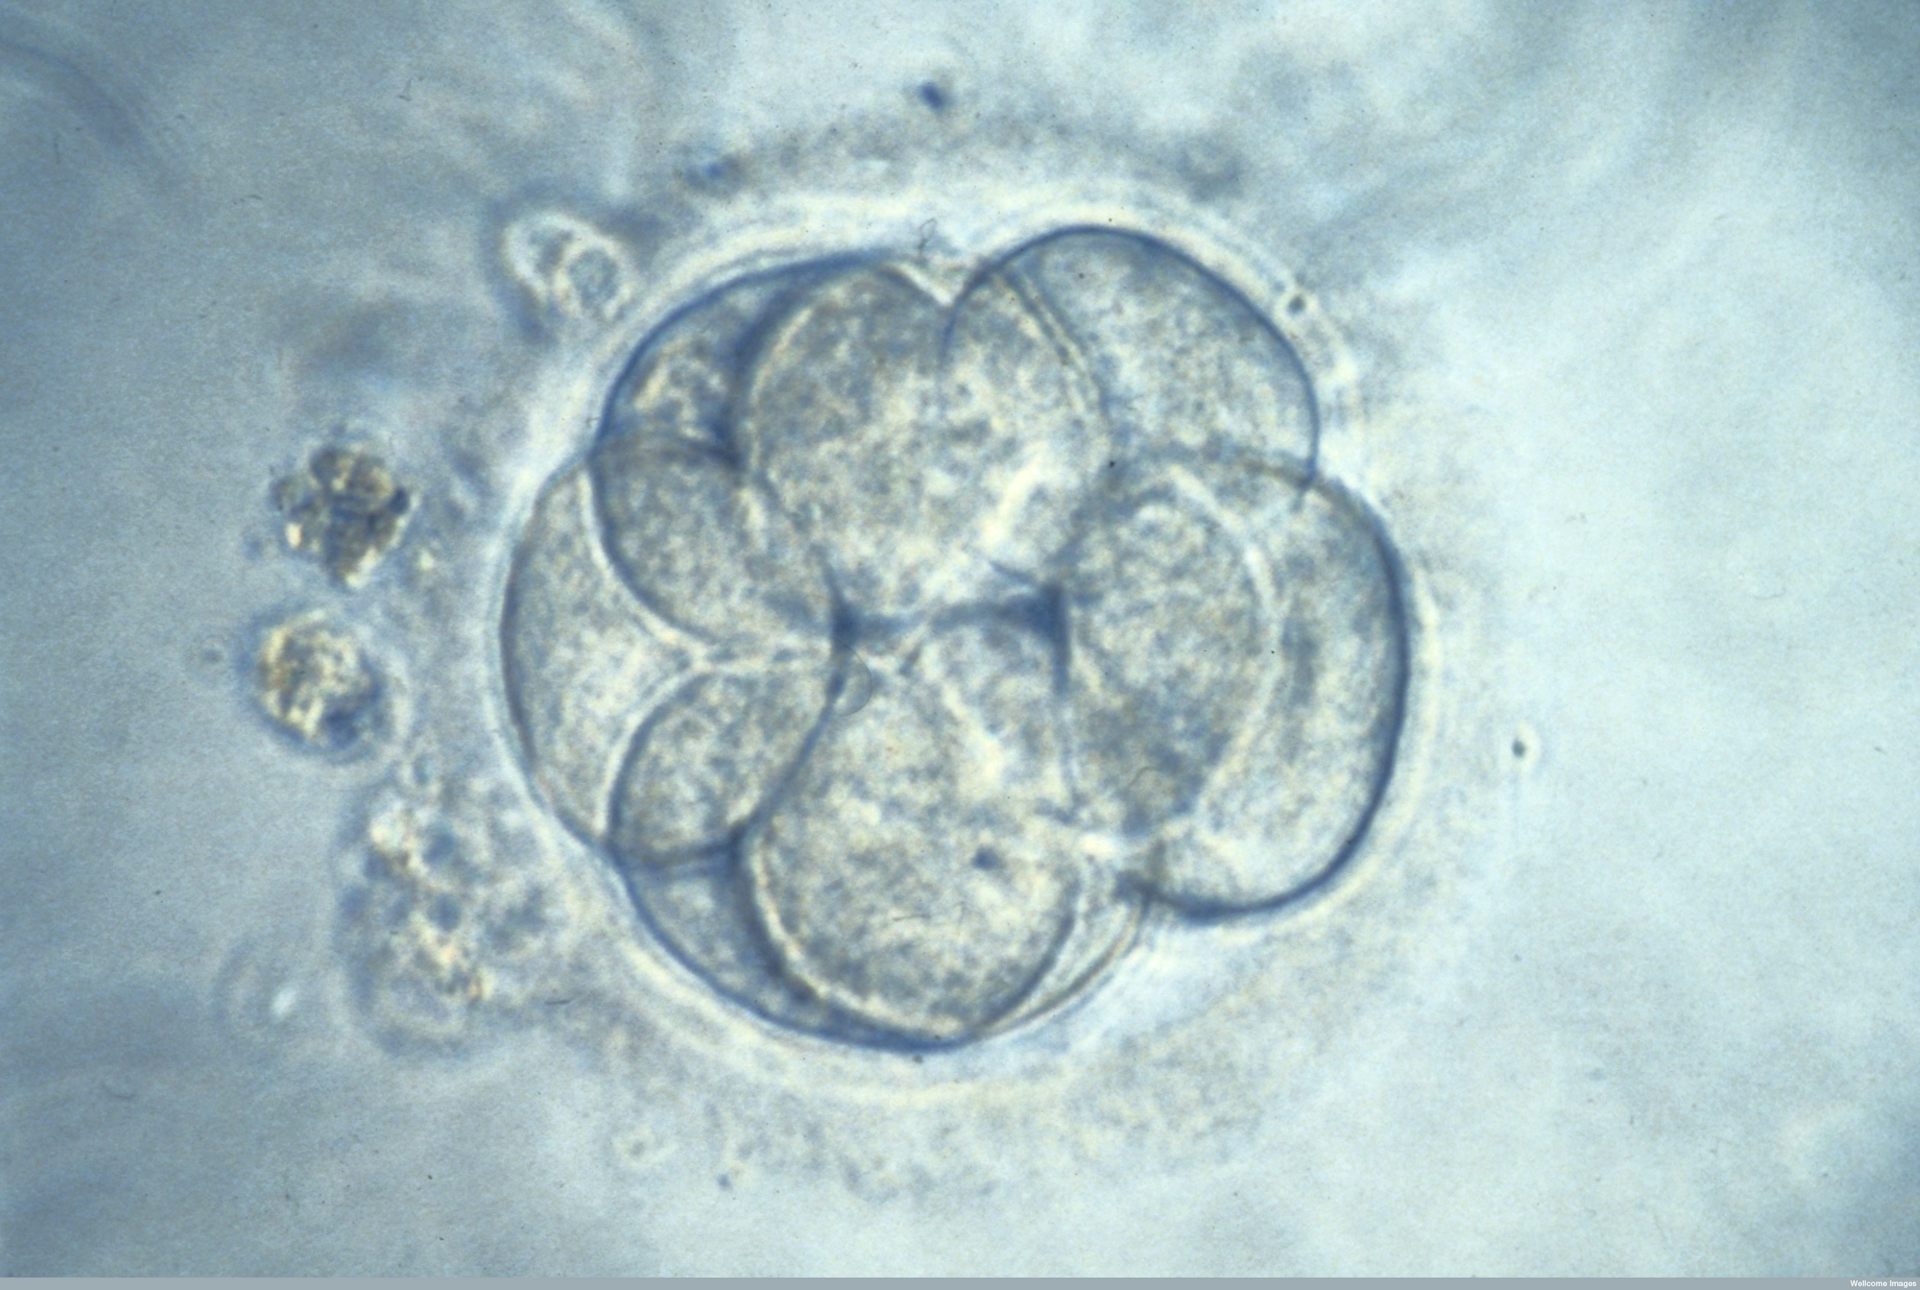 Как выглядит пятидневный эмбрион при эко фото